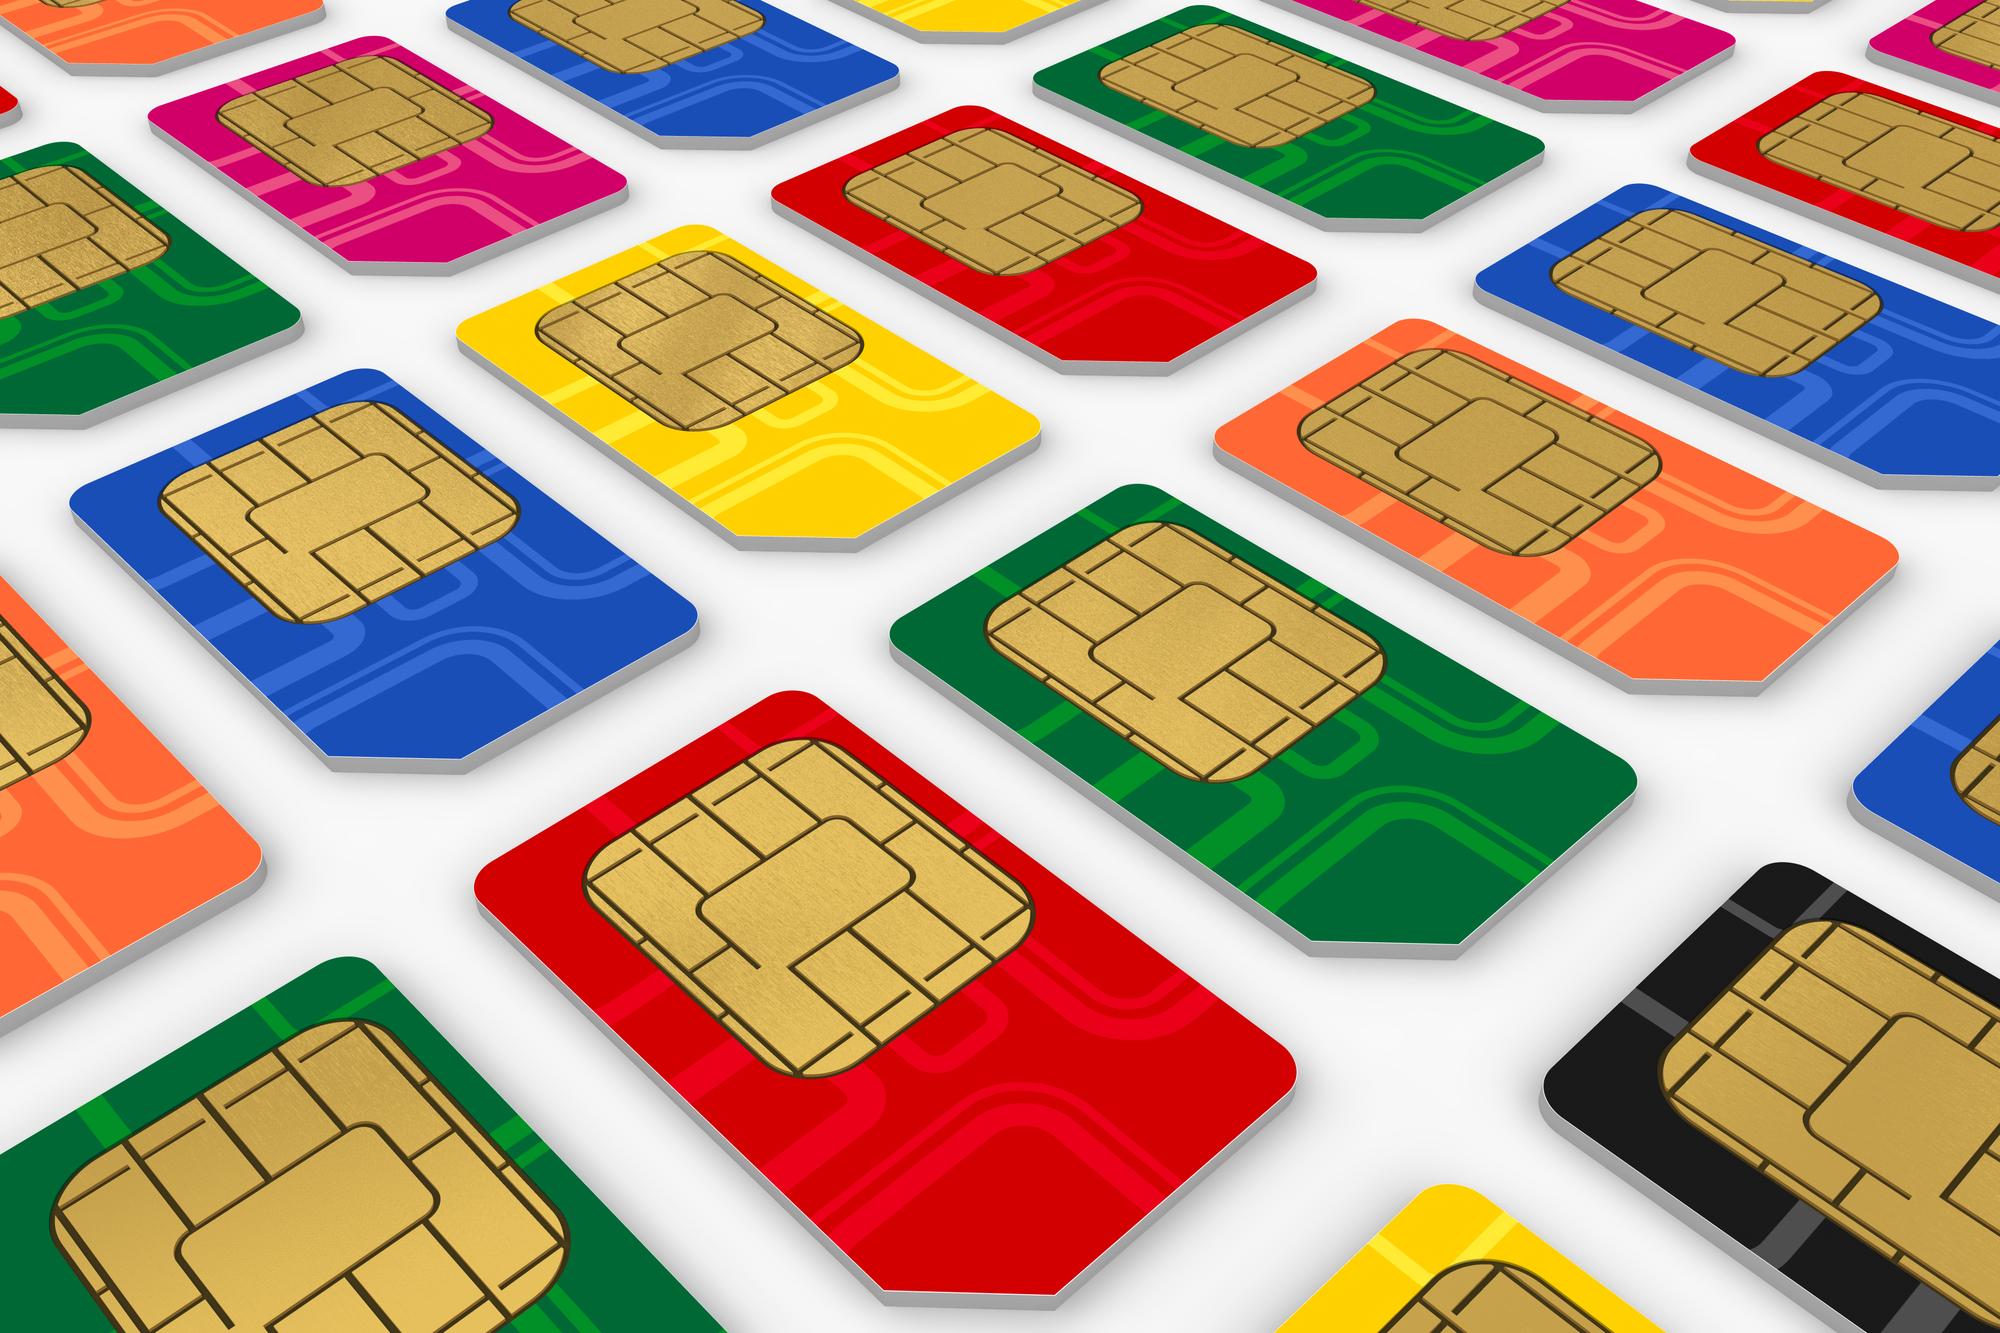 SIM Karten von Mobilfunkanbietern